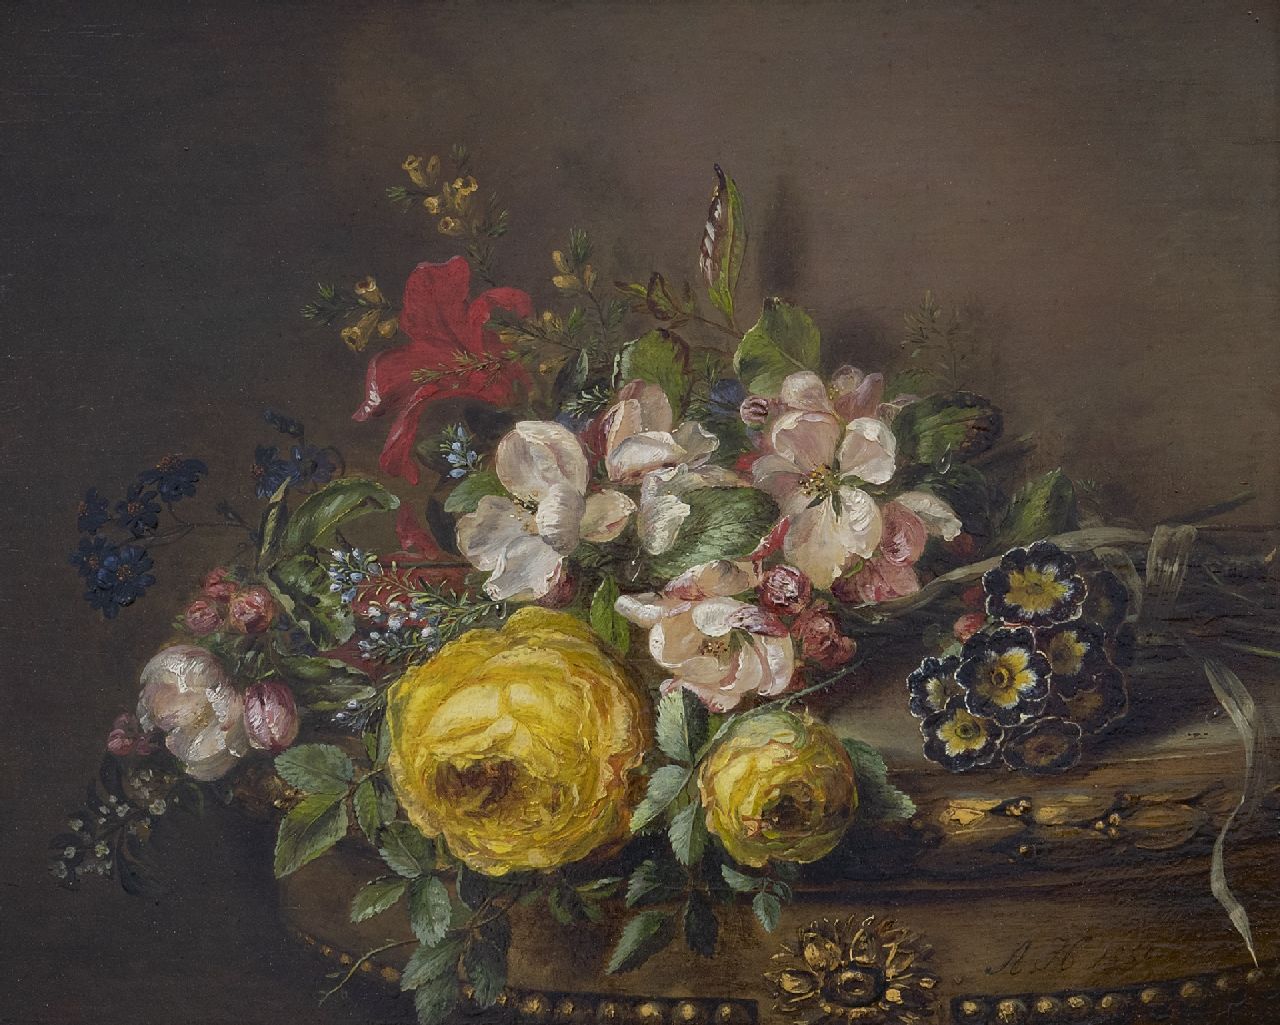 Haanen A.J.  | Adriana Johanna Haanen, Gemengd boeket op een tafel, olieverf op paneel 26,5 x 33,2 cm, gesigneerd rechtsonder en gedateerd 1850